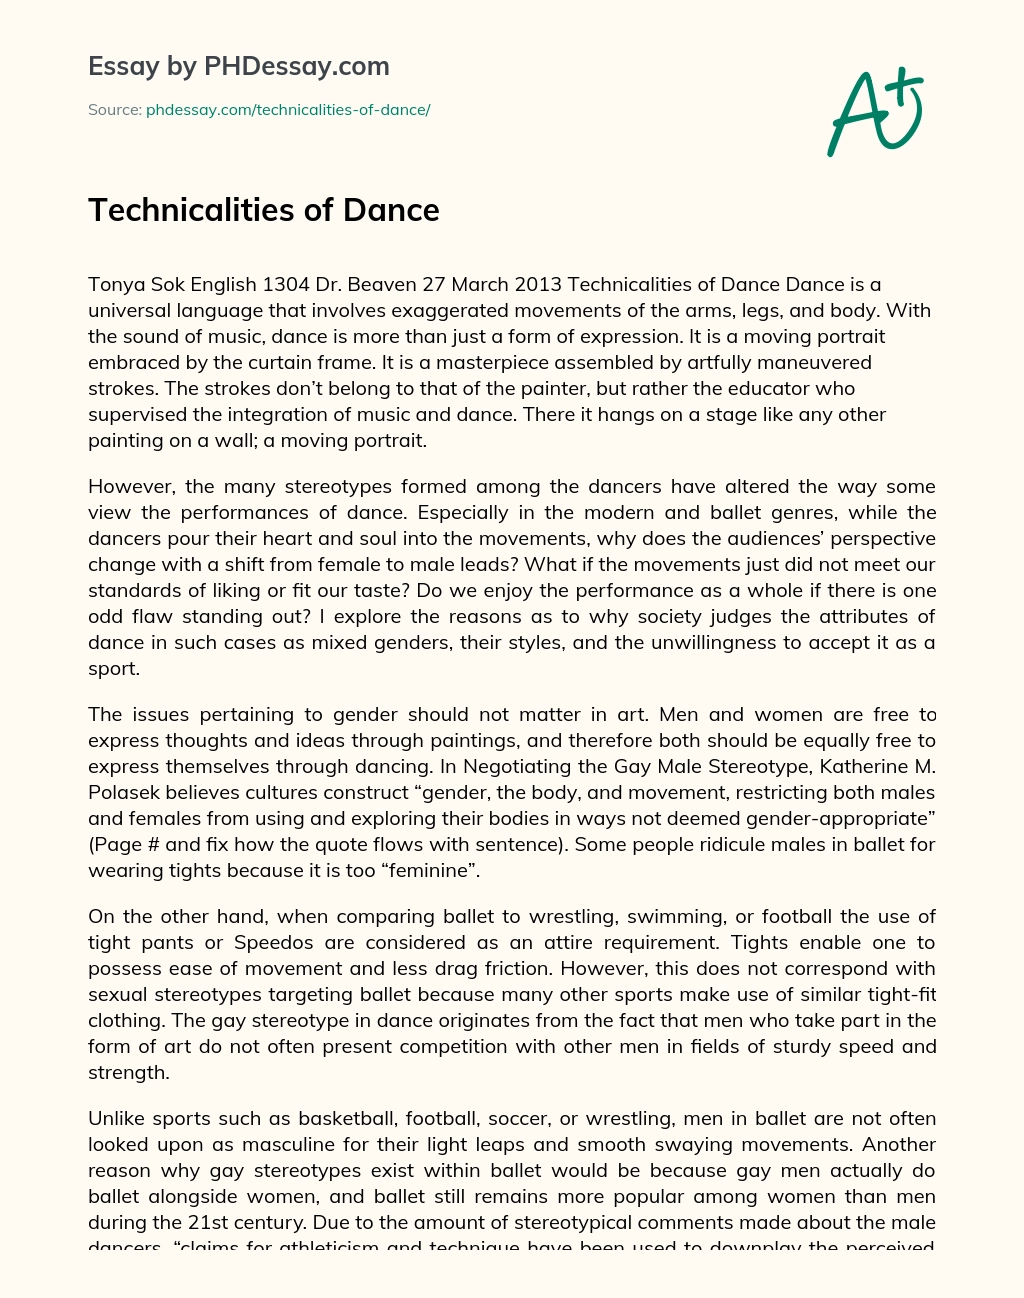 Technicalities of Dance essay